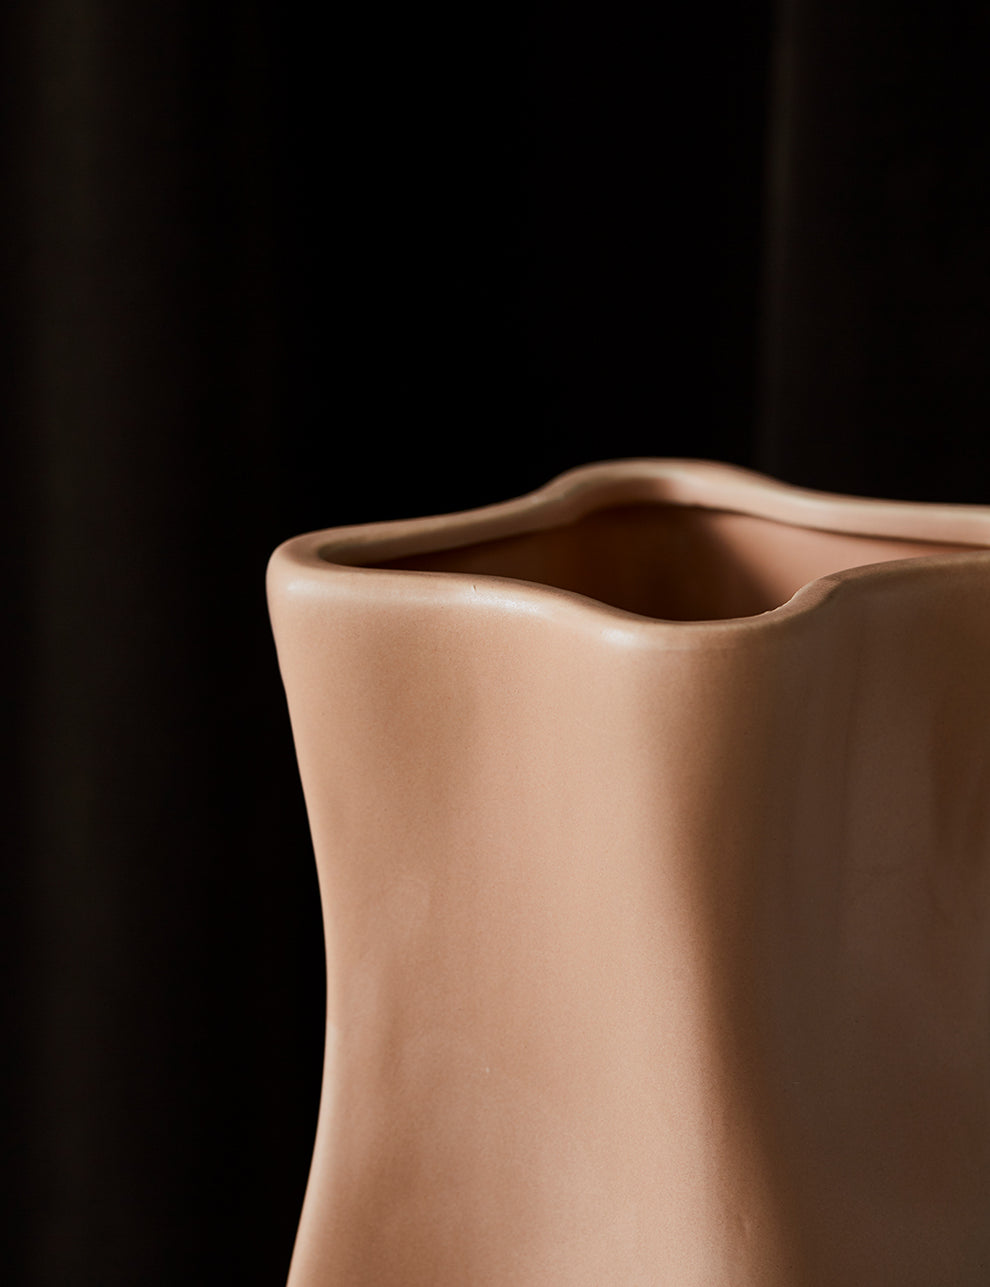 Nude Ceramic Curve Vase
